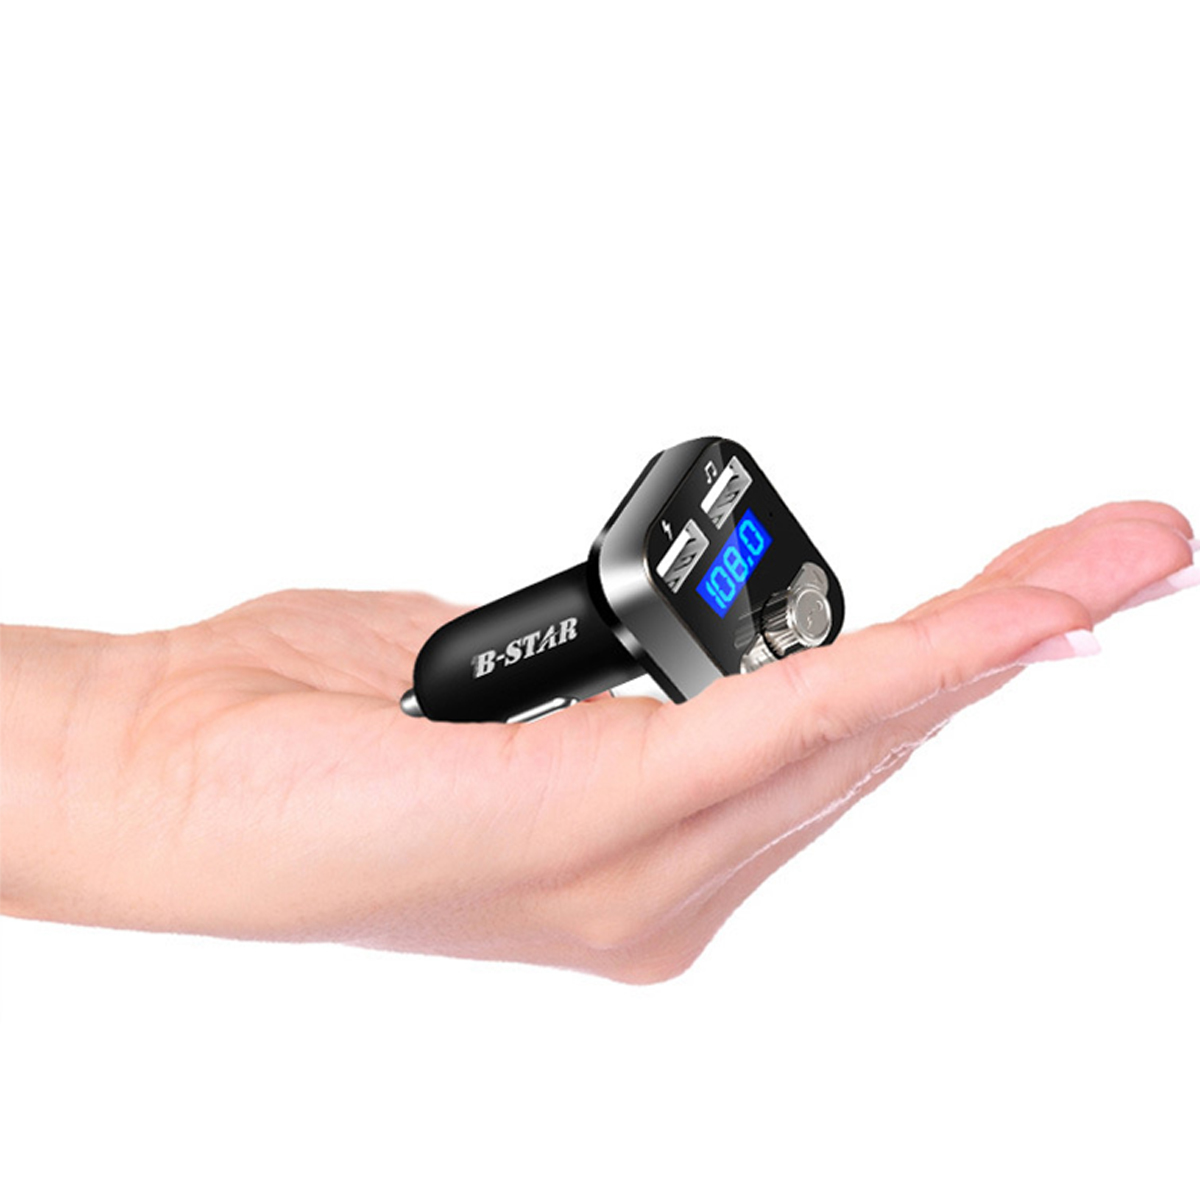 B-STAR nuevo coche Bluetooth MP3 reproductor de Audio teléfono manos libres Kit coche Mp3 reproductor Bluetooth 4,0 versión